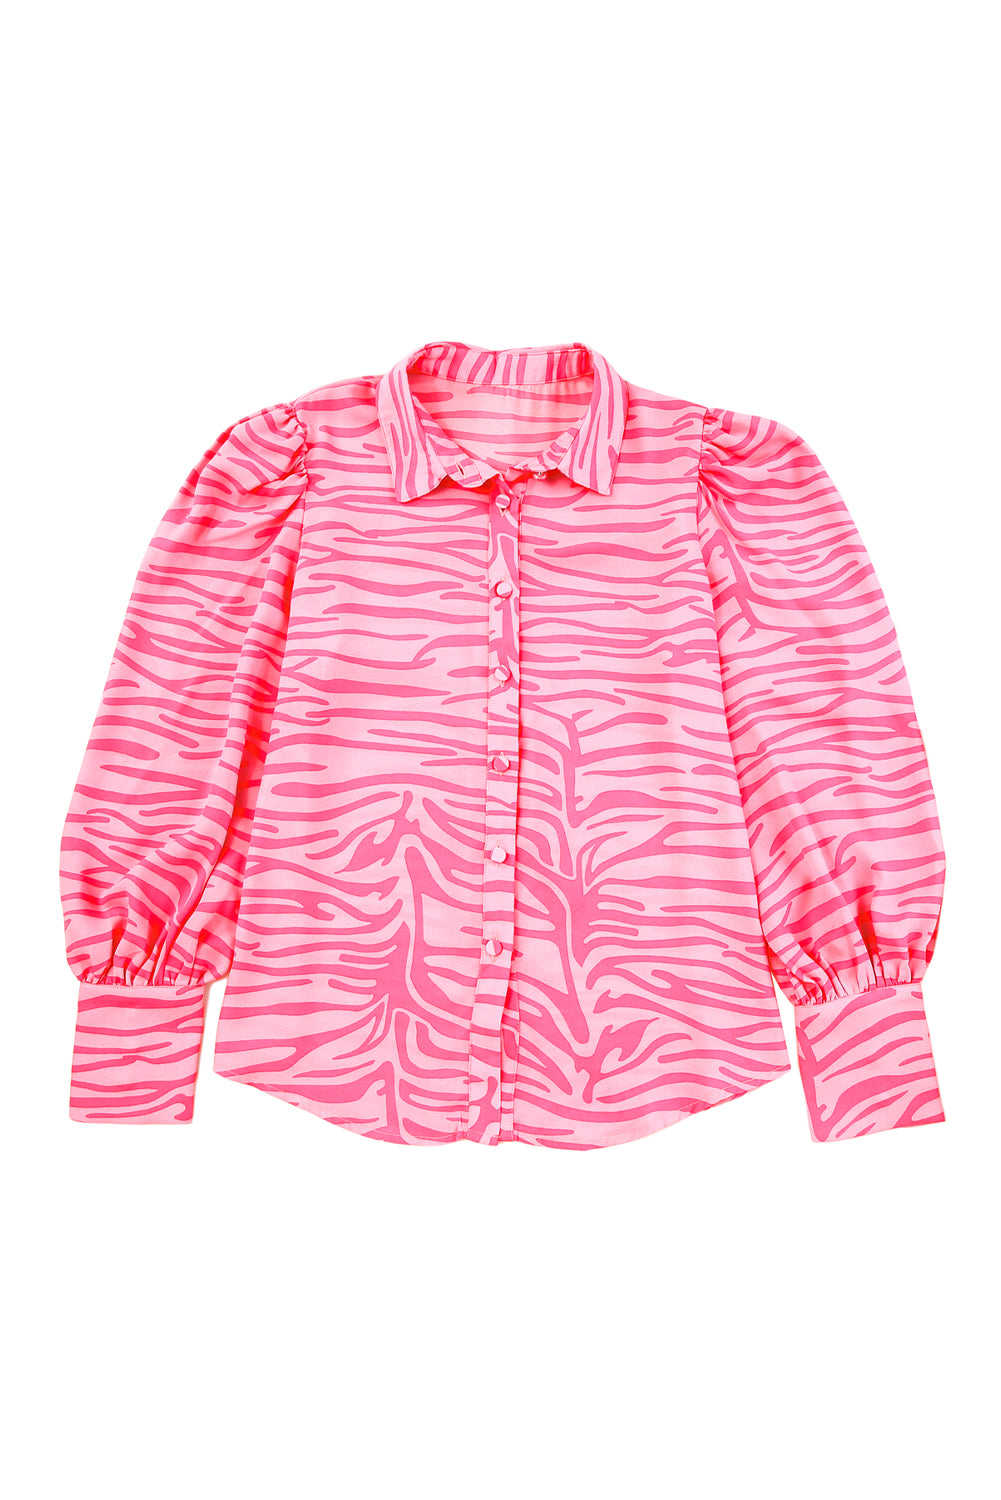 Ružičasta košulja s lanternastim rukavima s printom zebrastih pruga